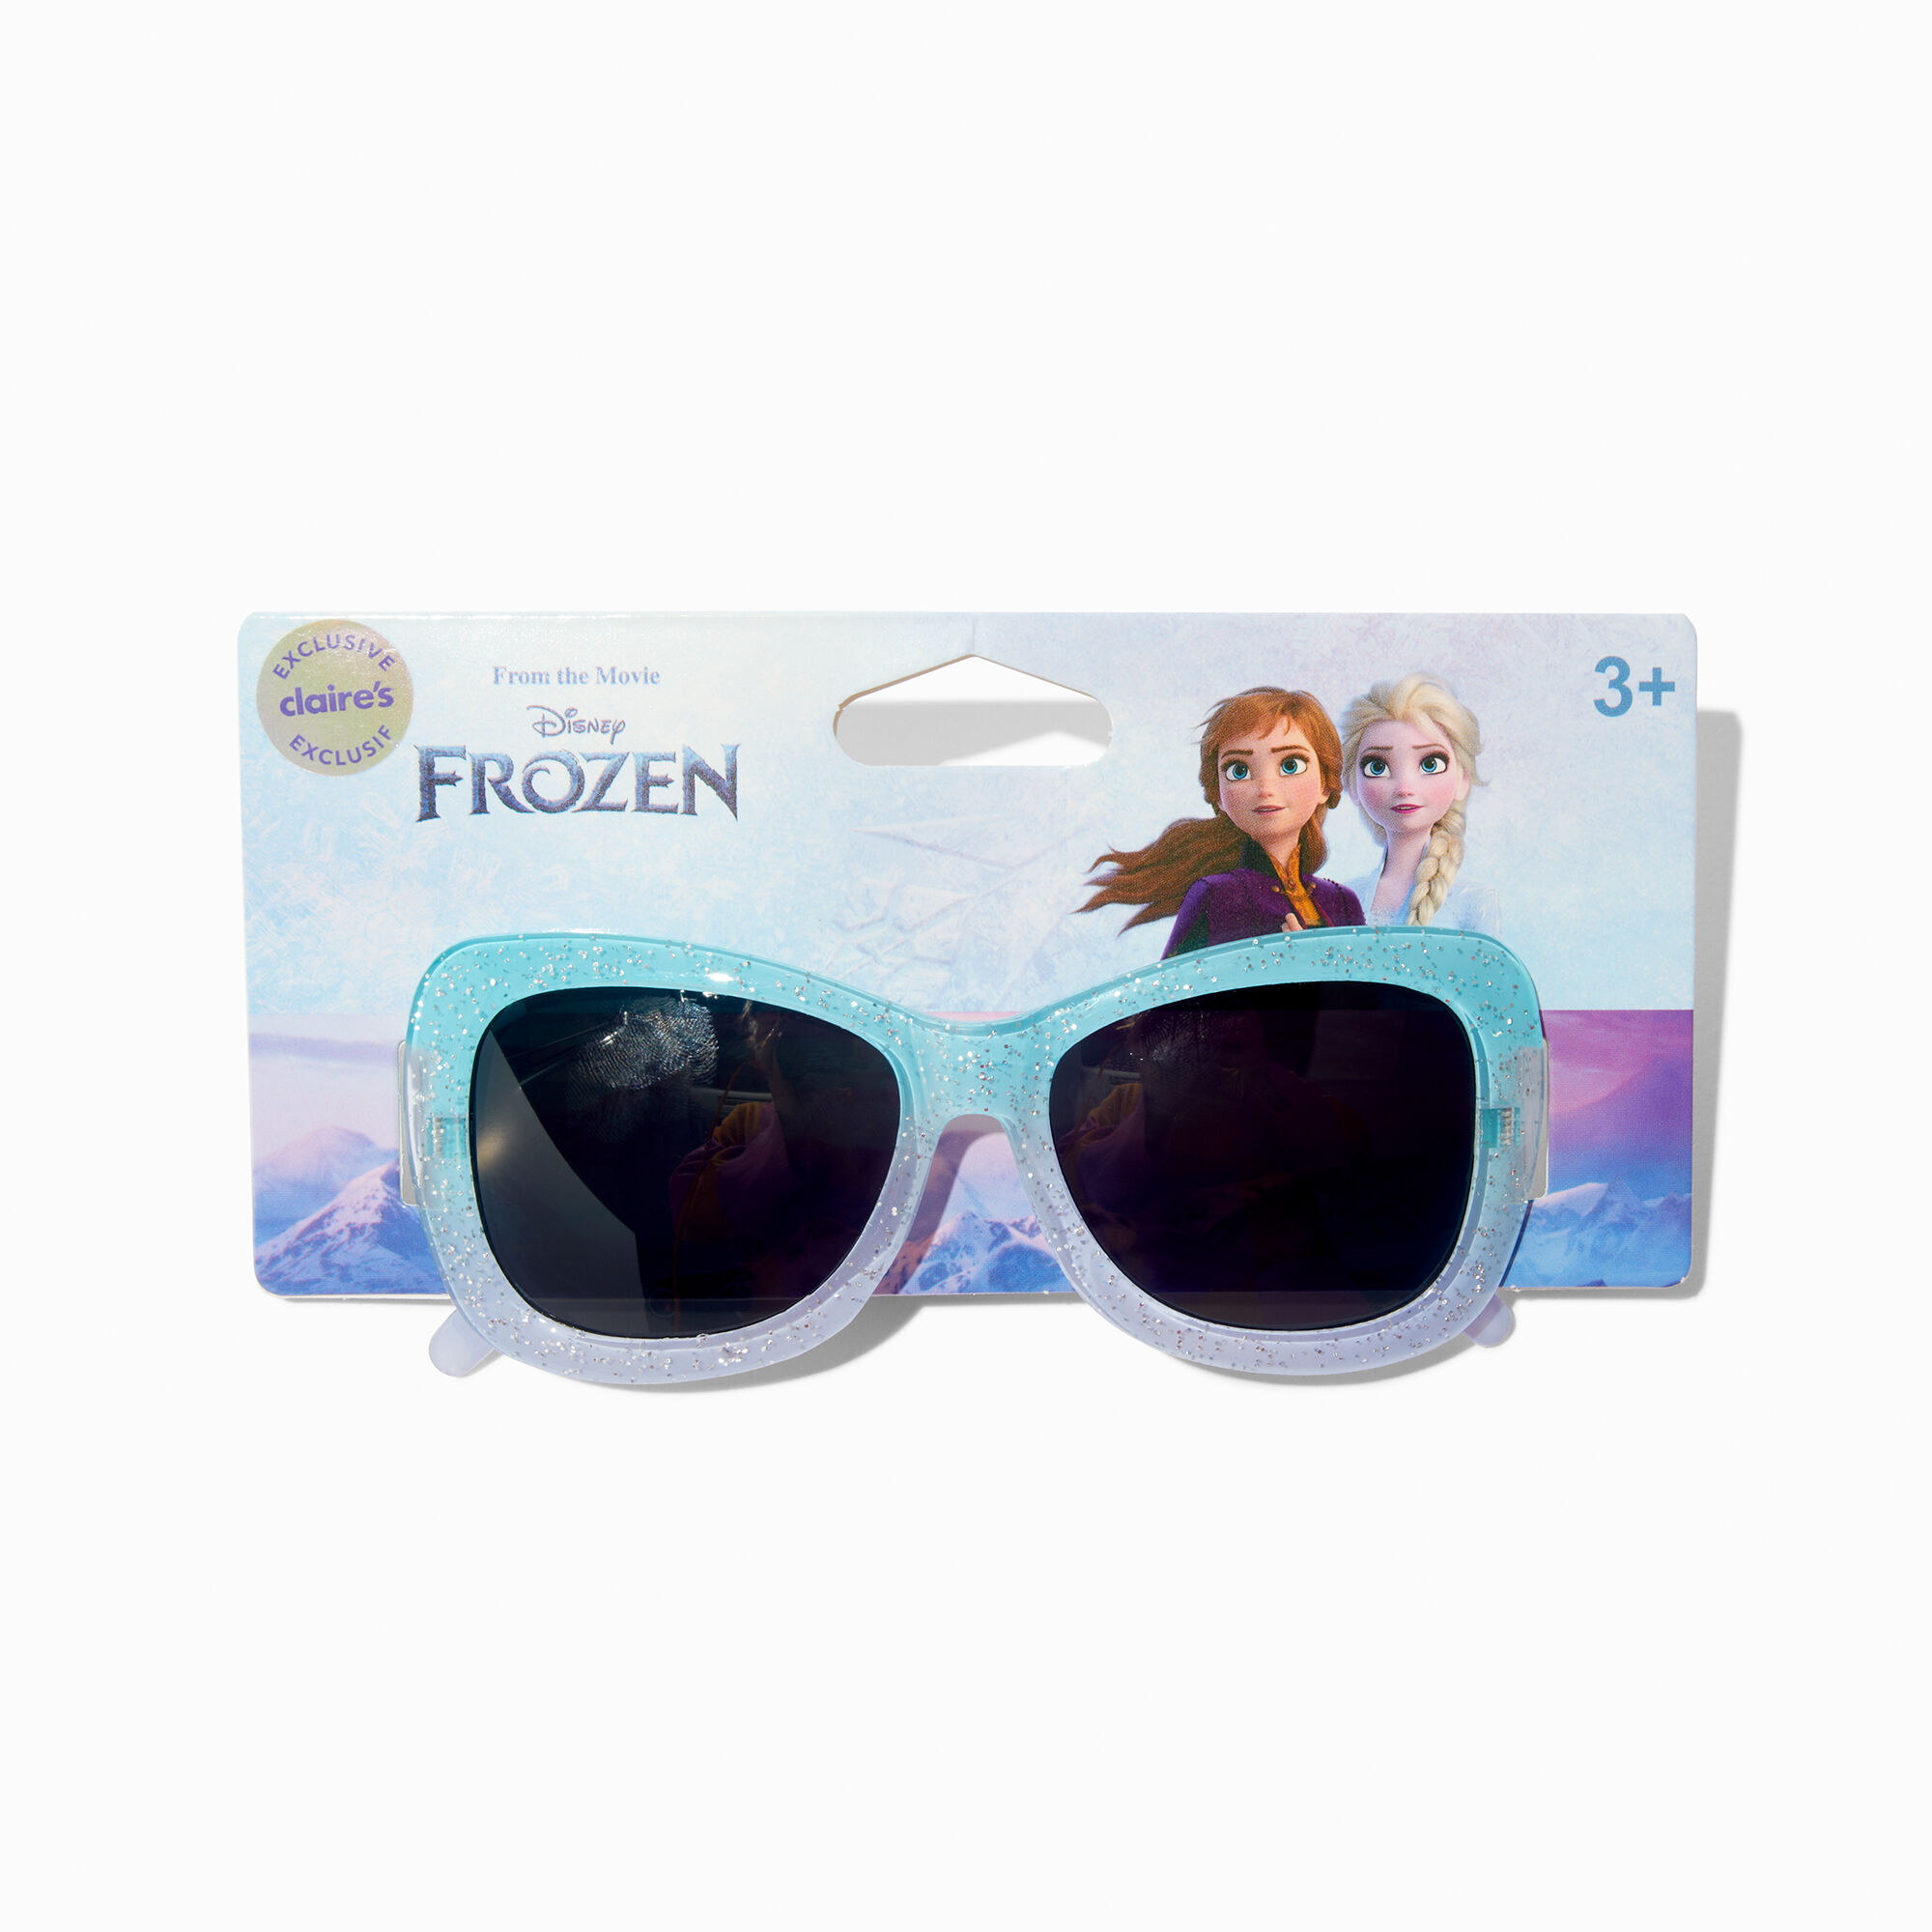 View Disney Frozen 2 Claires Exclusive Sunglasses Blue information